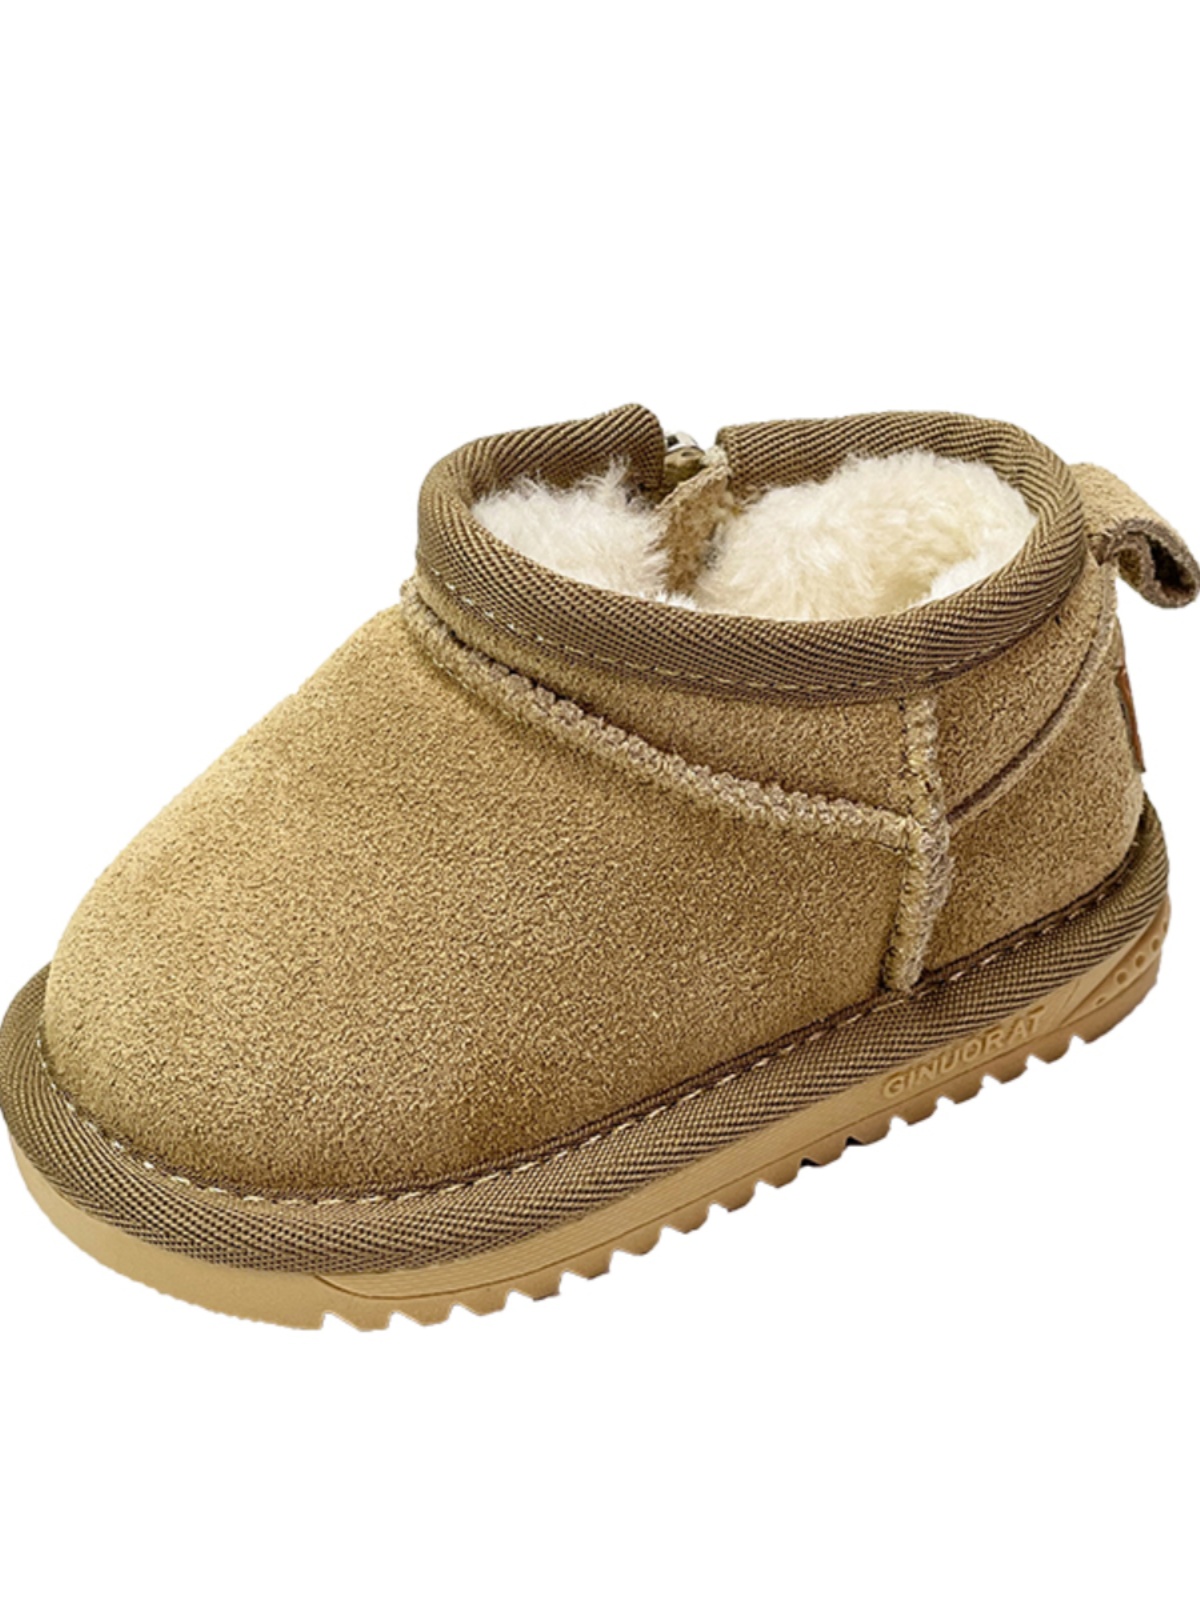 新品婴儿雪地靴冬季加绒保暖幼儿鞋子儿童冬鞋女软底学步鞋男宝宝